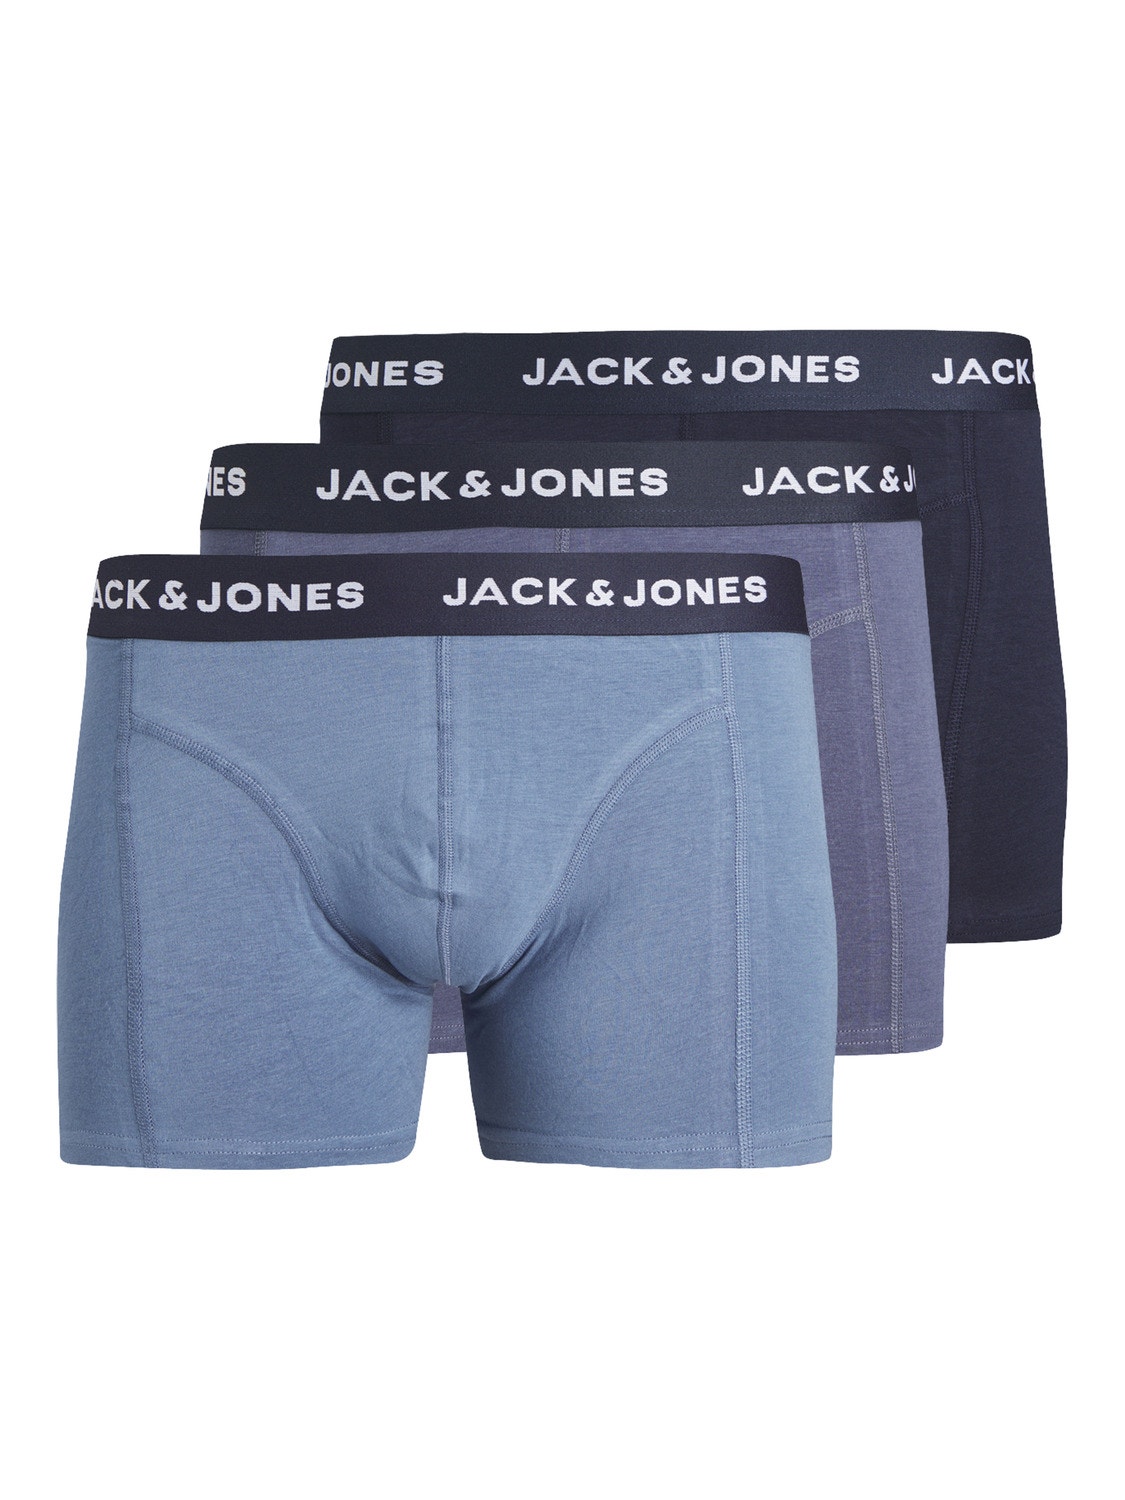 Jack & Jones Paquete de 3 Boxers -Navy Blazer - 12251471